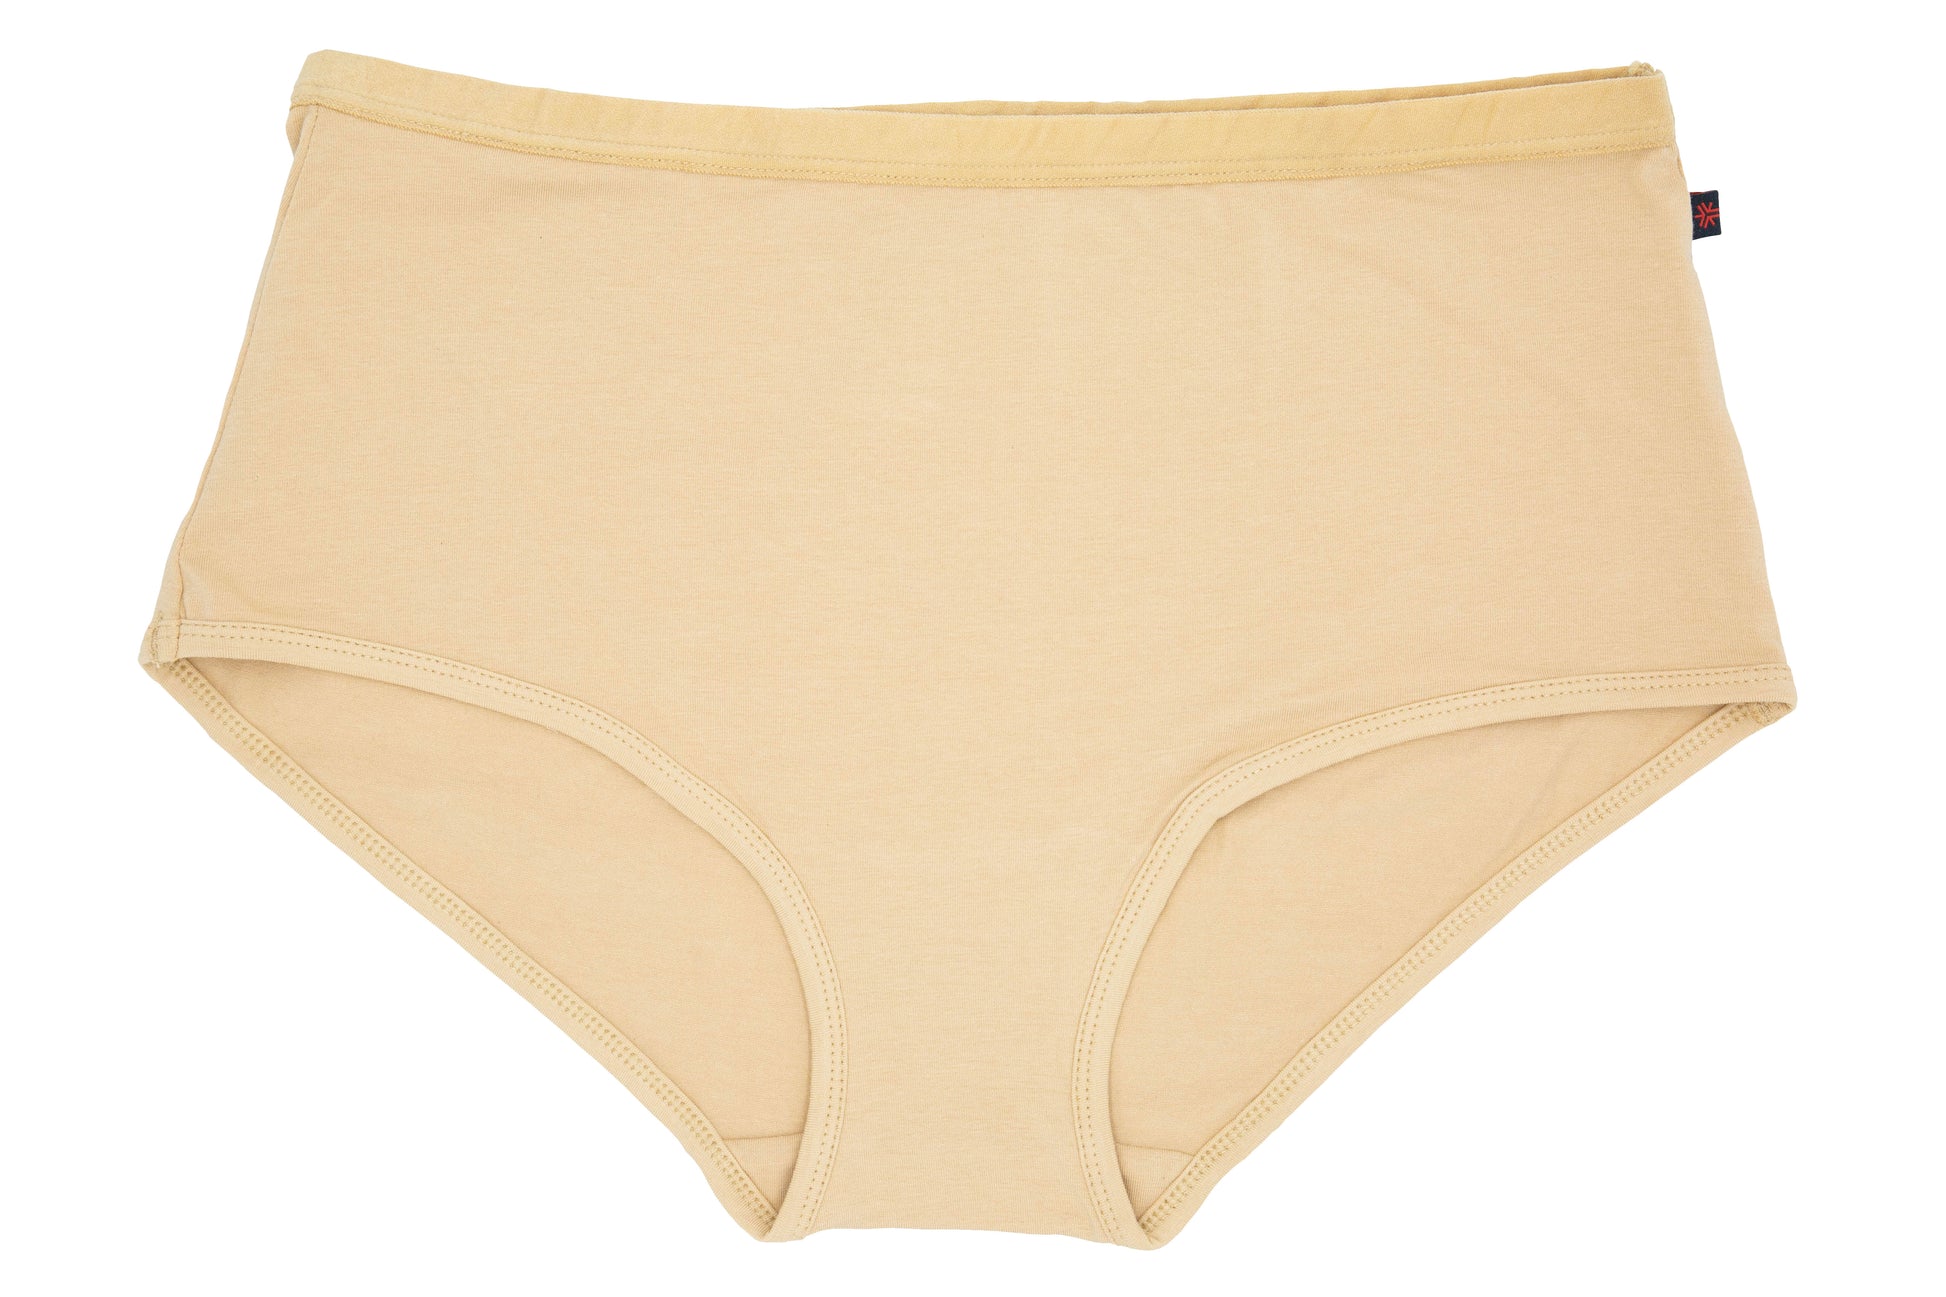 Order vegan underwear for women online